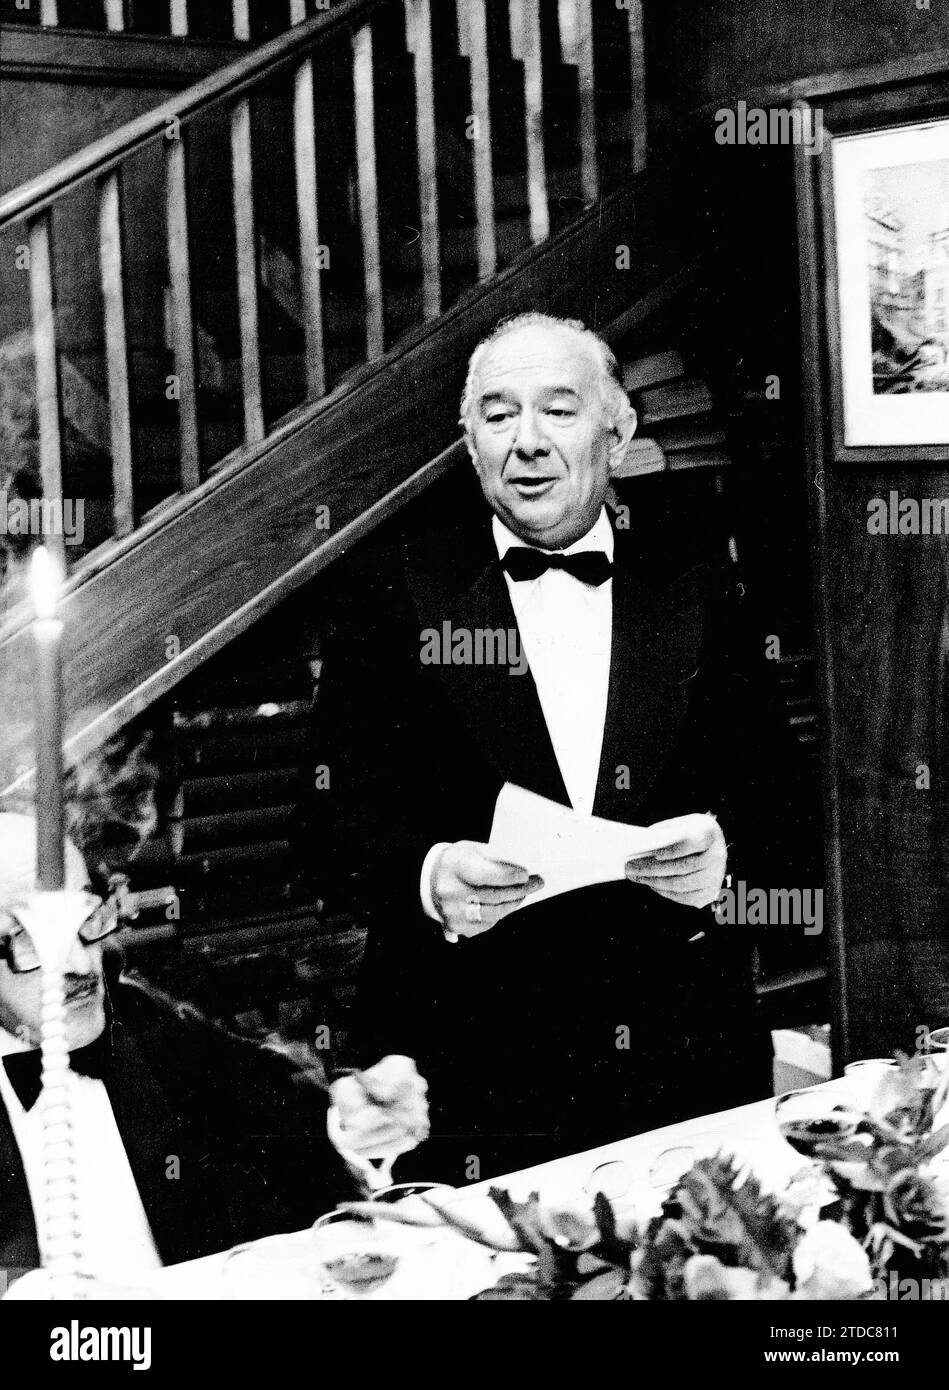 06/09/1979. Manuel Blanco Tobío reads his speech at the presentation of the Mariano de Cavia Prize. Credit: Album / Archivo ABC / José García Stock Photo